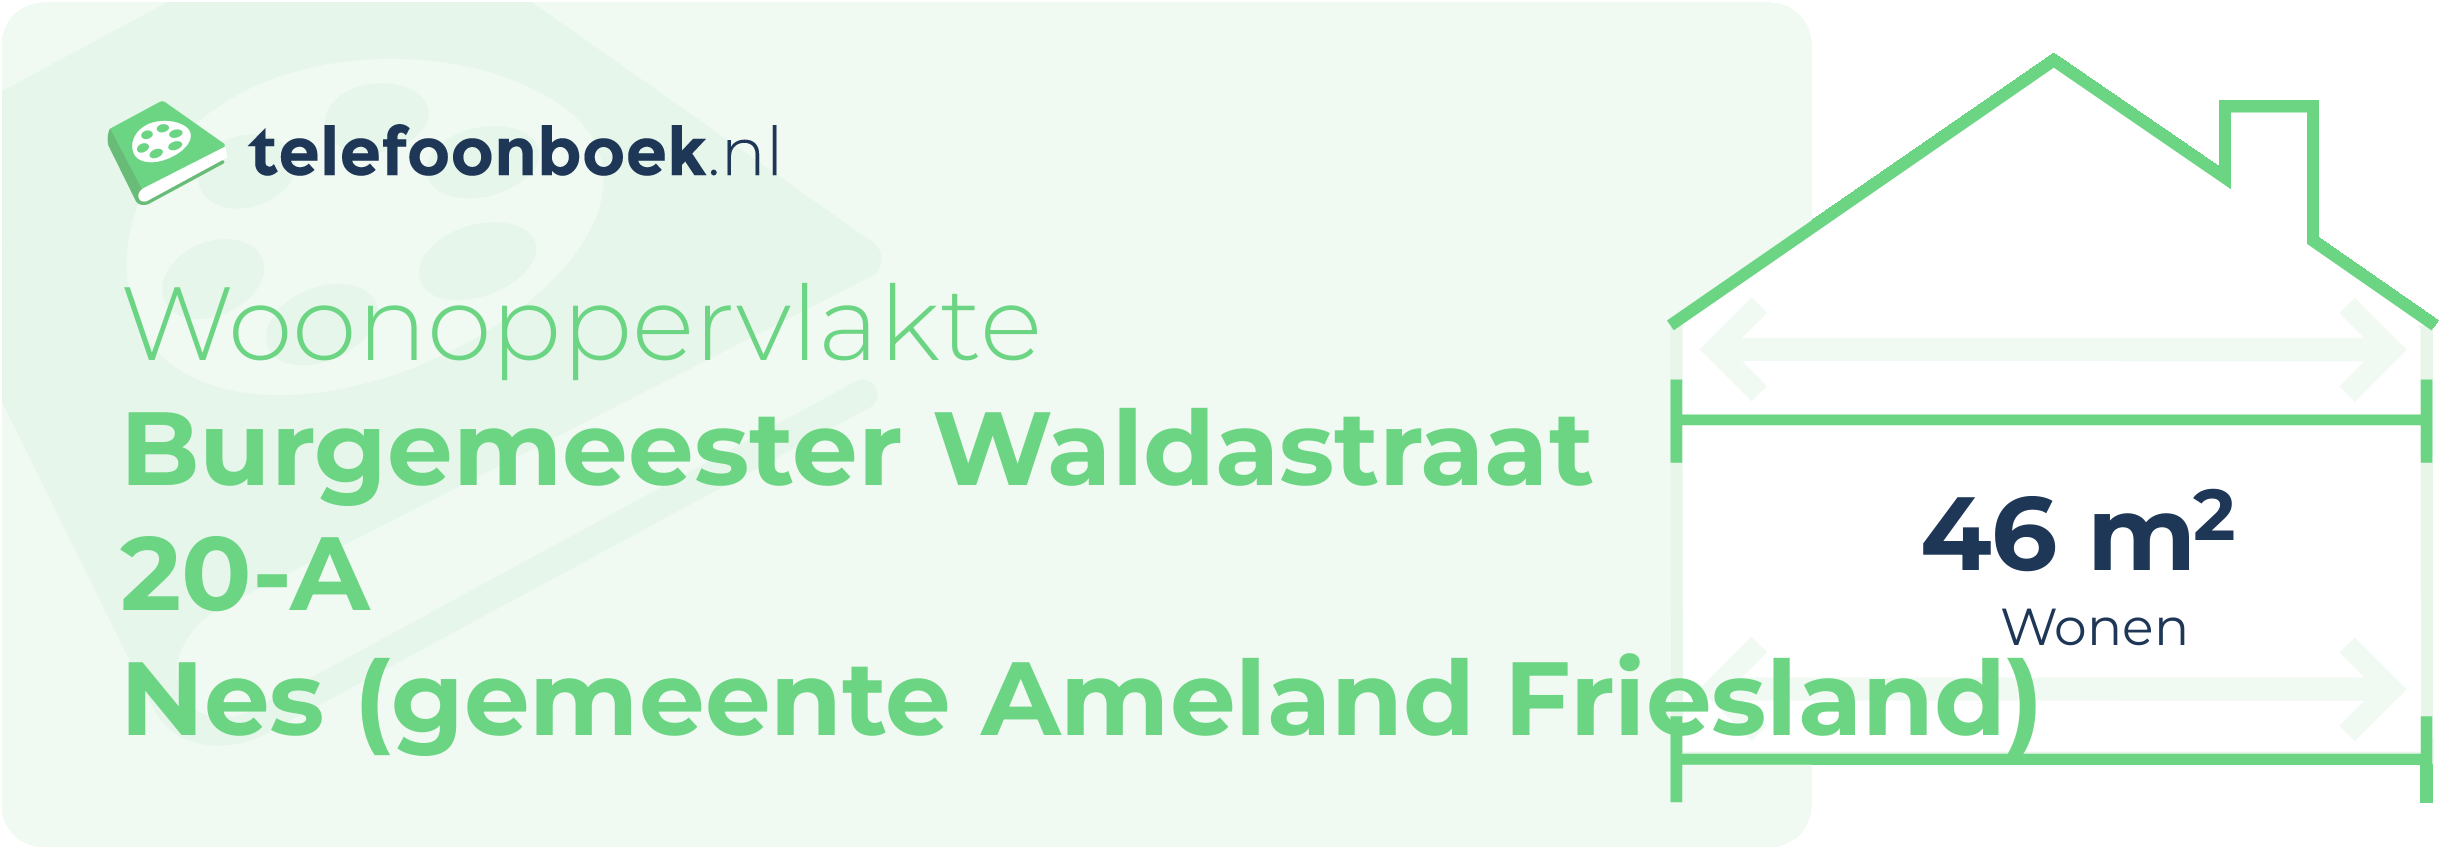 Woonoppervlakte Burgemeester Waldastraat 20-A Nes (gemeente Ameland Friesland)